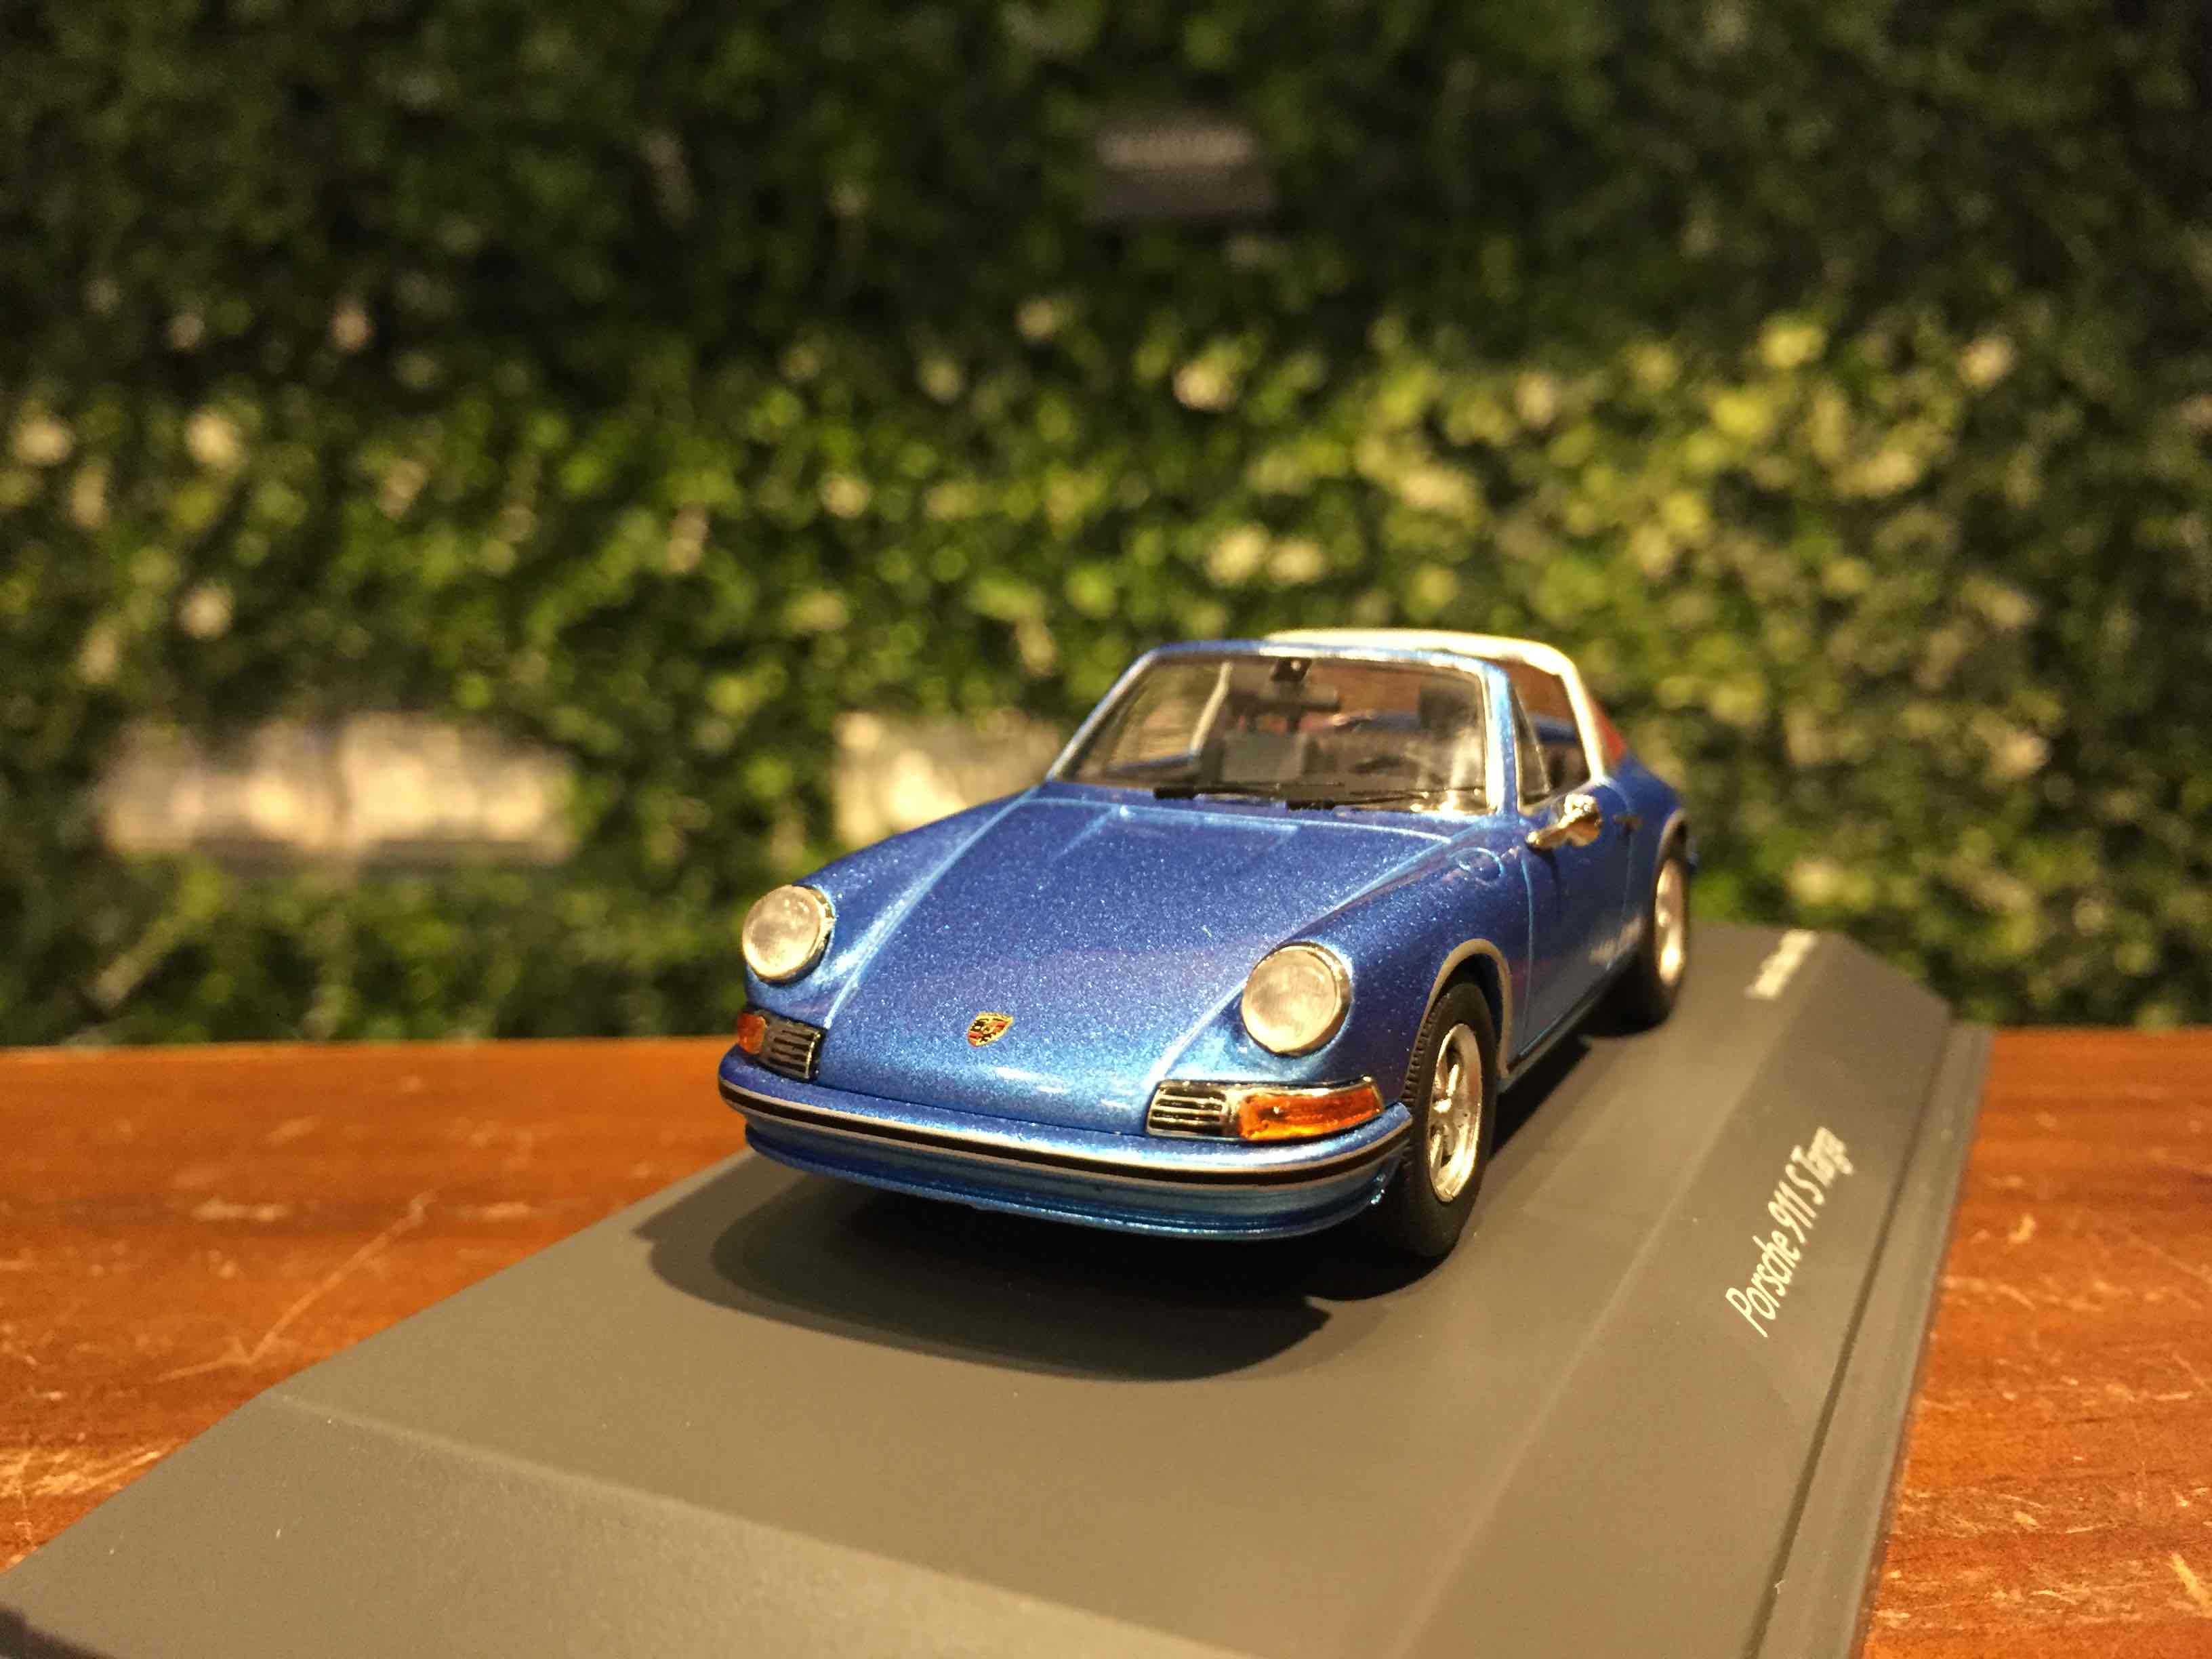 1/43 Schuco Porsche 911 S Targa 1971 Blue 450367700【MGM】